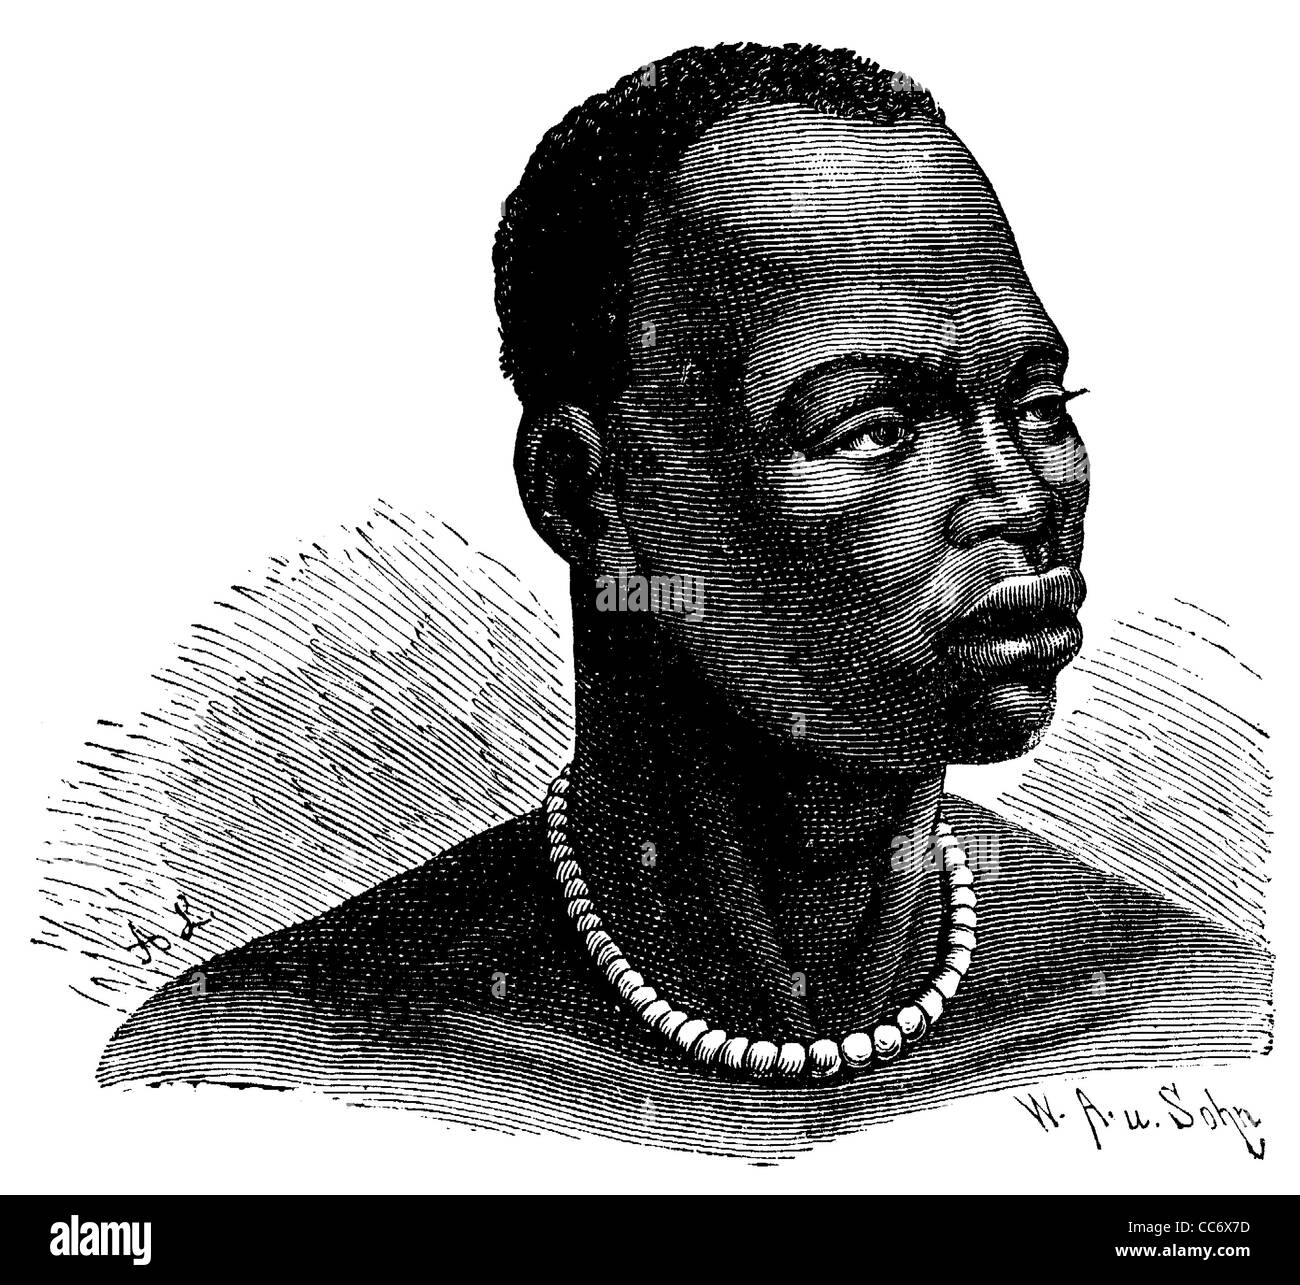 Portrait of an African Man (Schanti), man from Africa Stock Photo